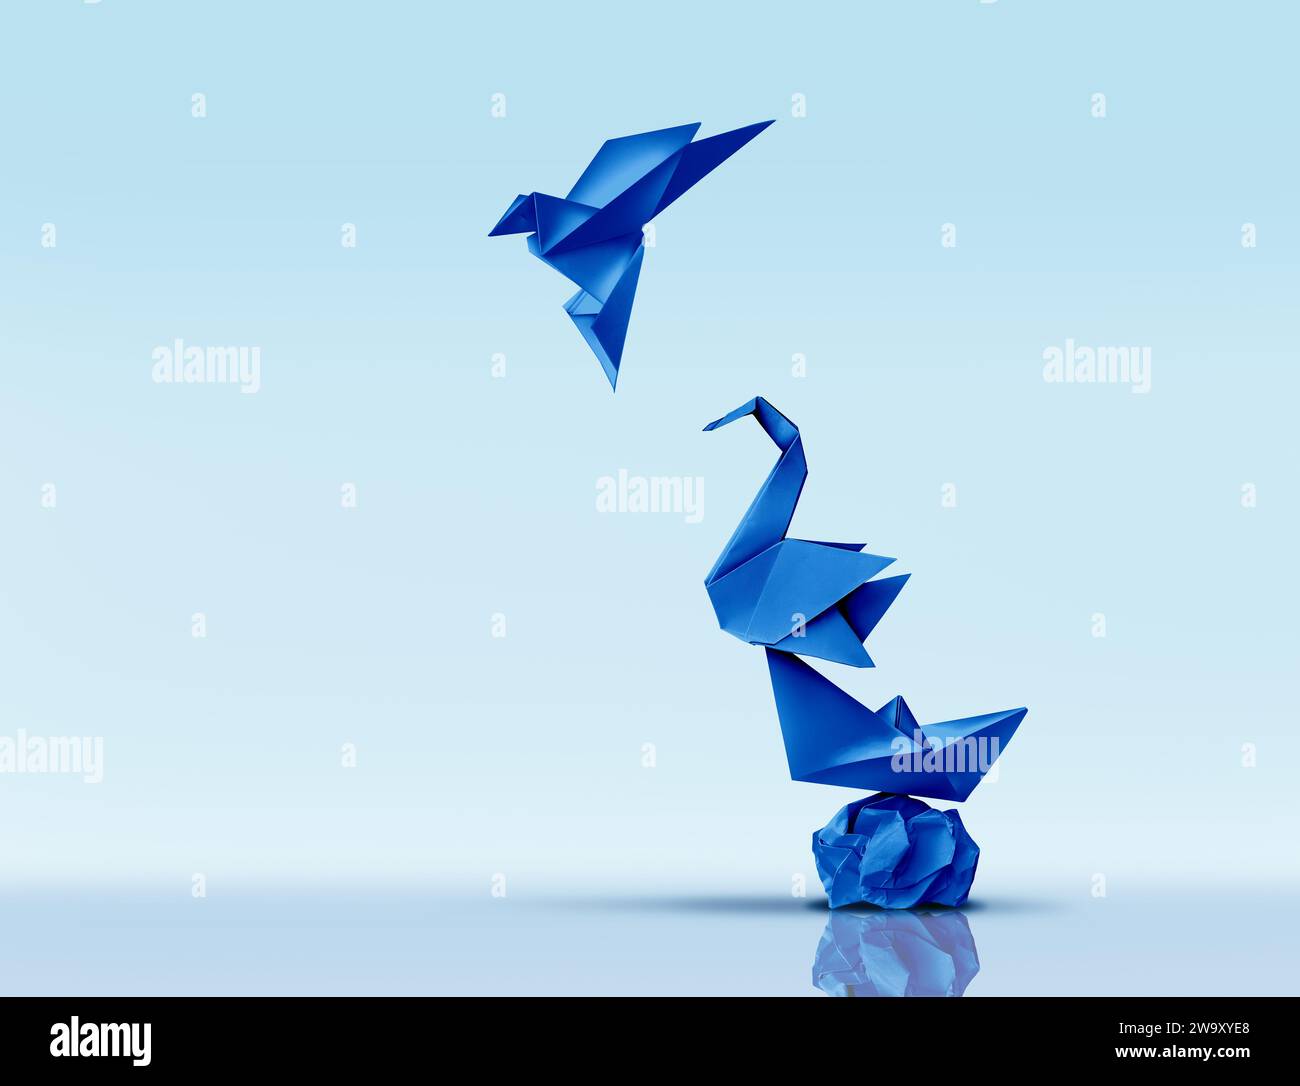 Aspirer à la grandeur et poursuivre l'excellence ou escalader un concept supérieur et avancer vers de nouveaux sommets métaphore comme sculptures en papier origami bleu comme sy Banque D'Images